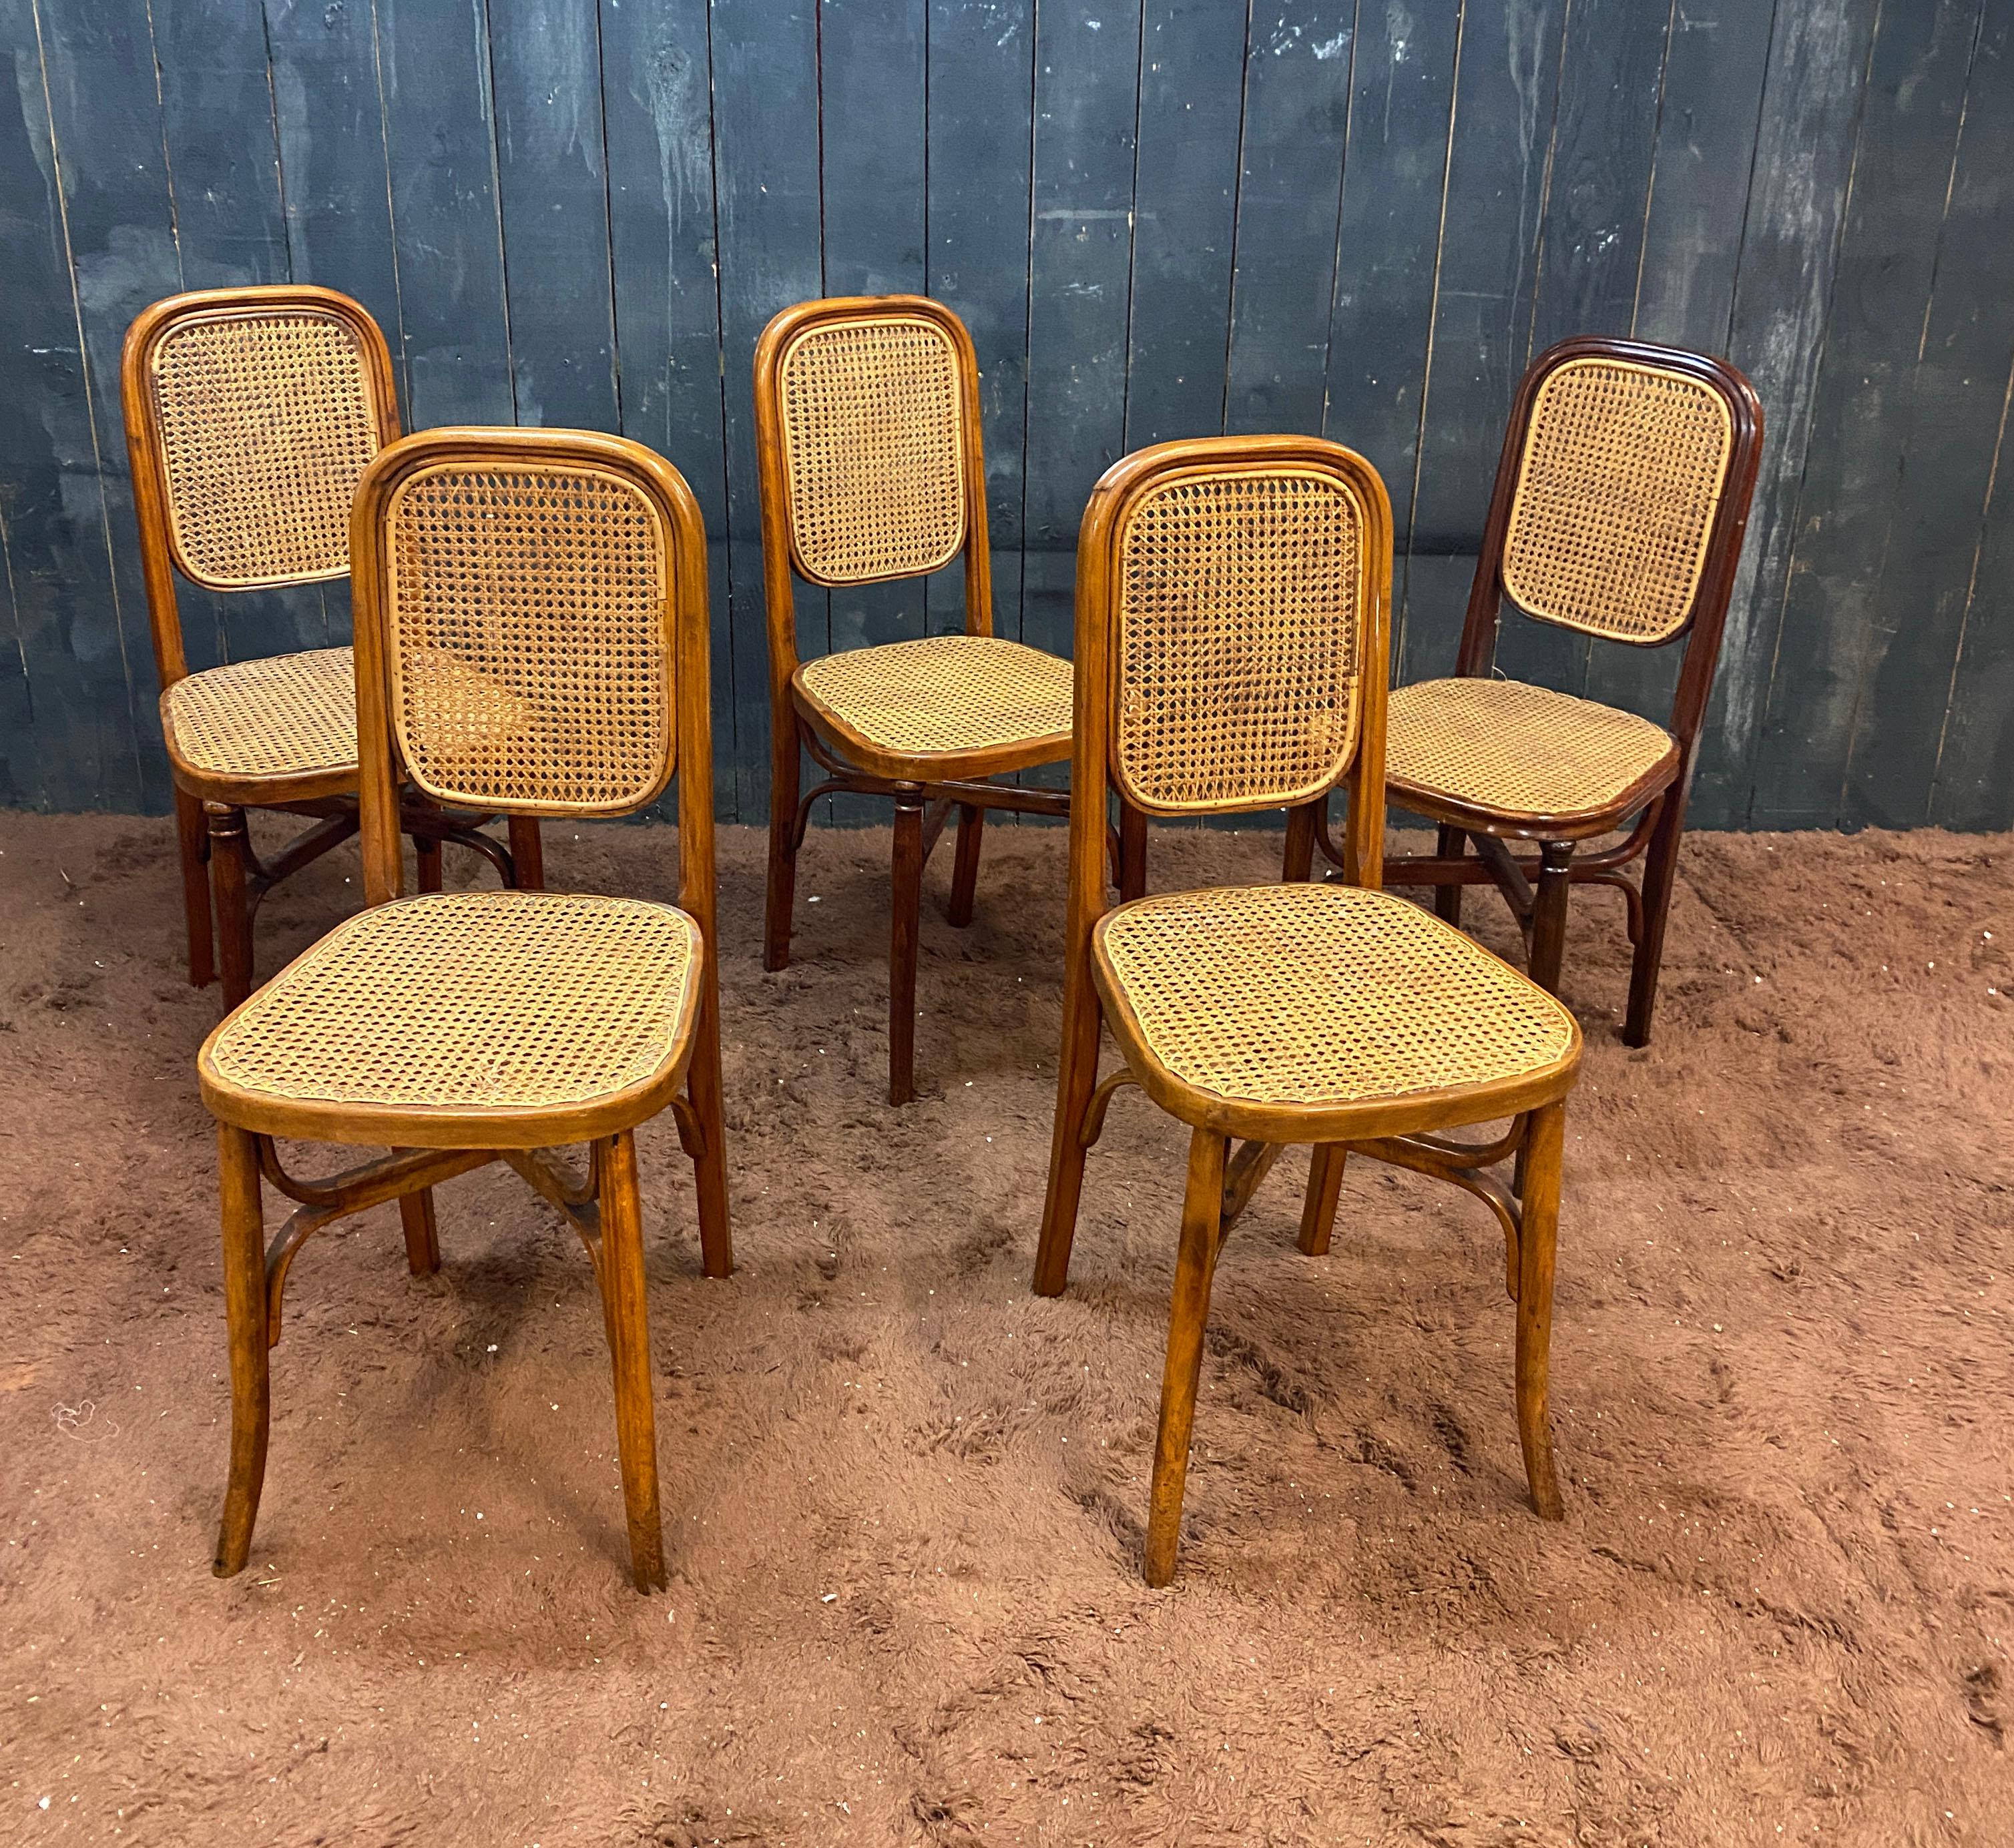 5 chaises de style Thonet, circa 1900
bon état général, aucune restauration nécessaire